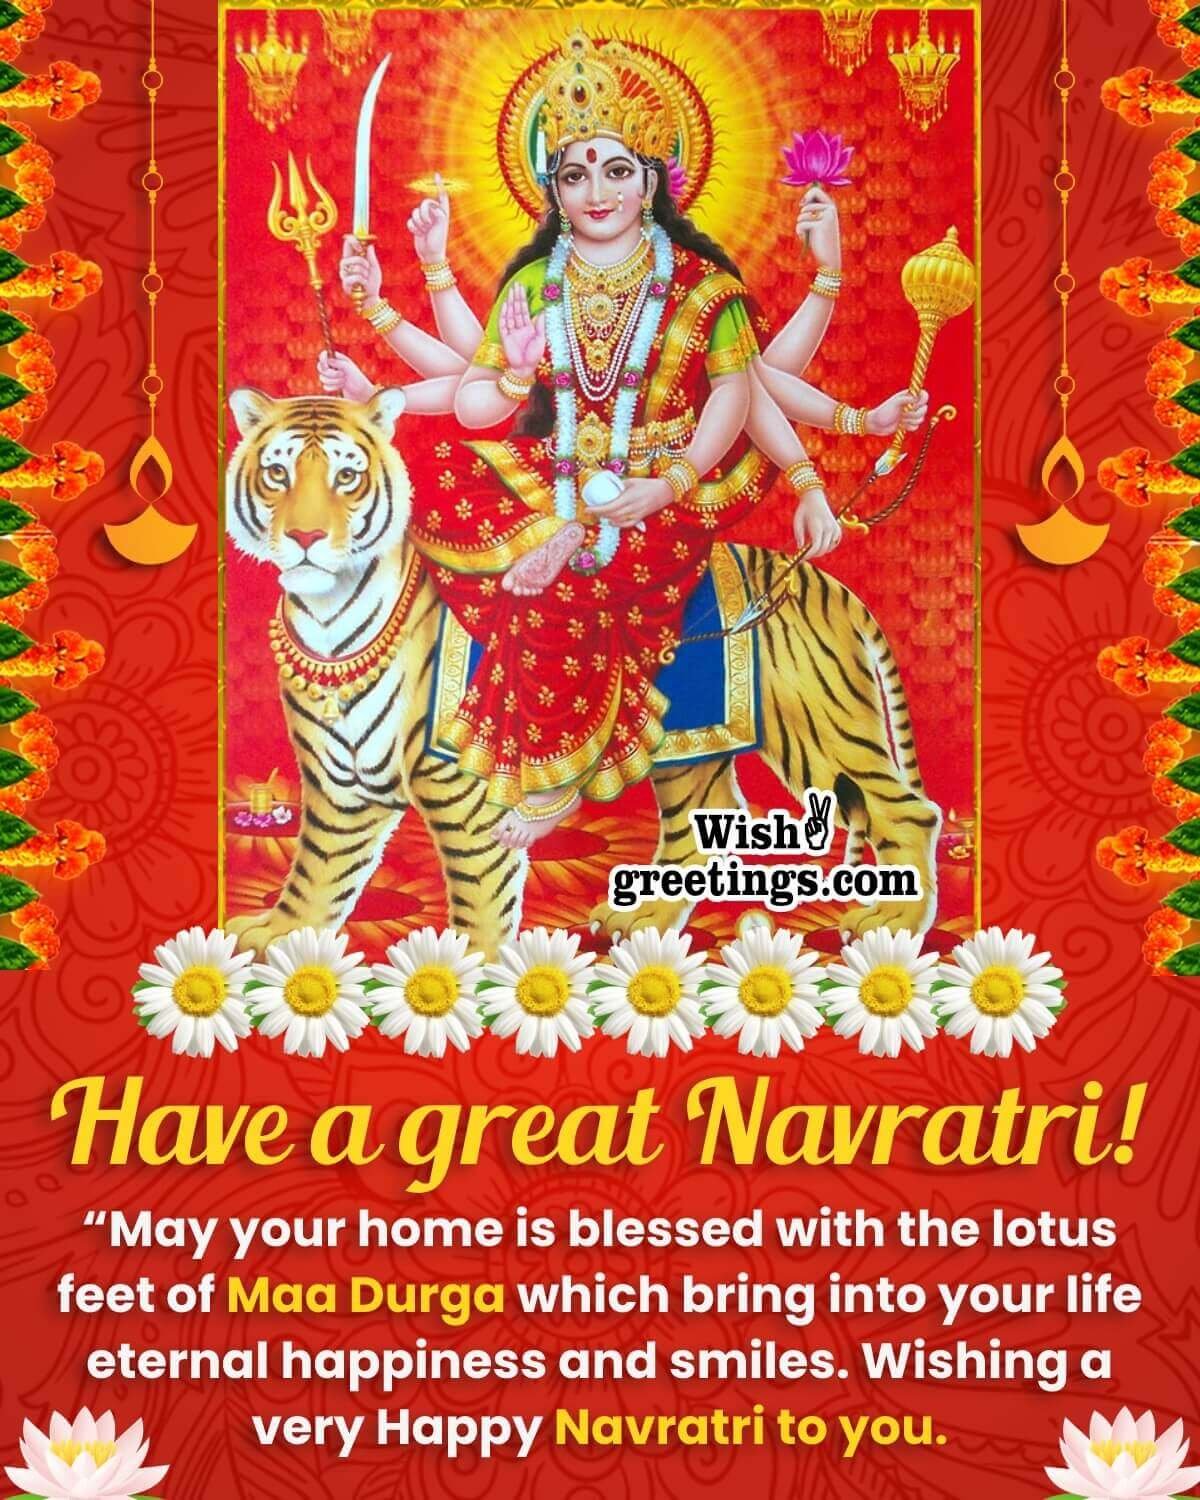 Happy Navratri Image